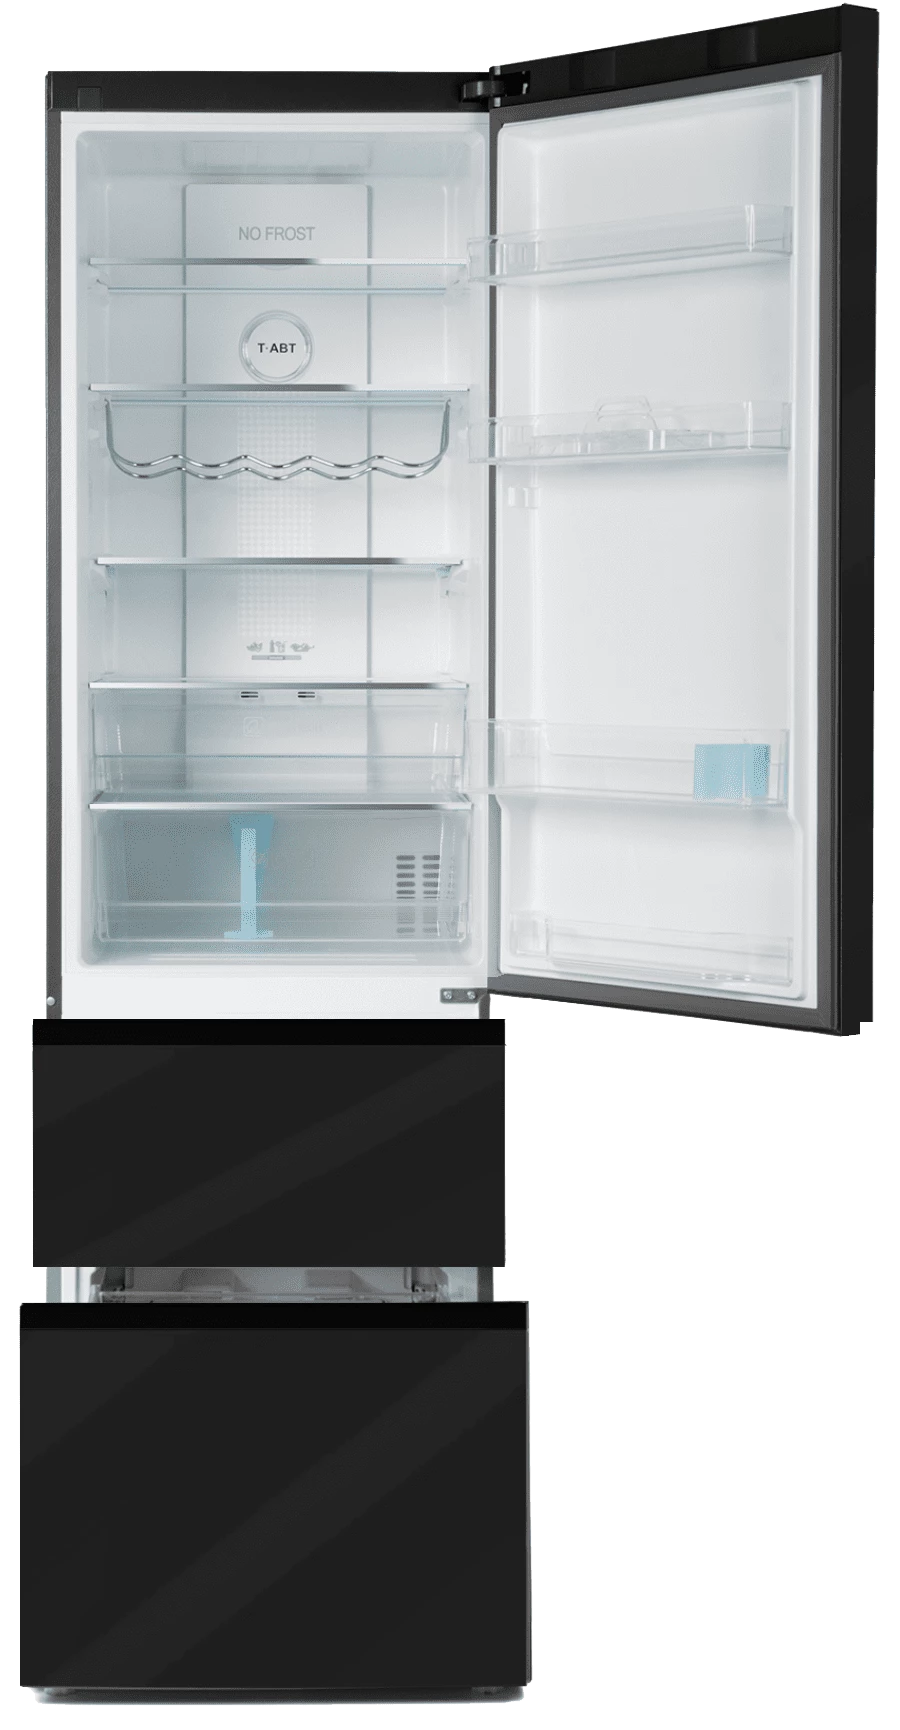 Холодильник Haier A2F637CGBG